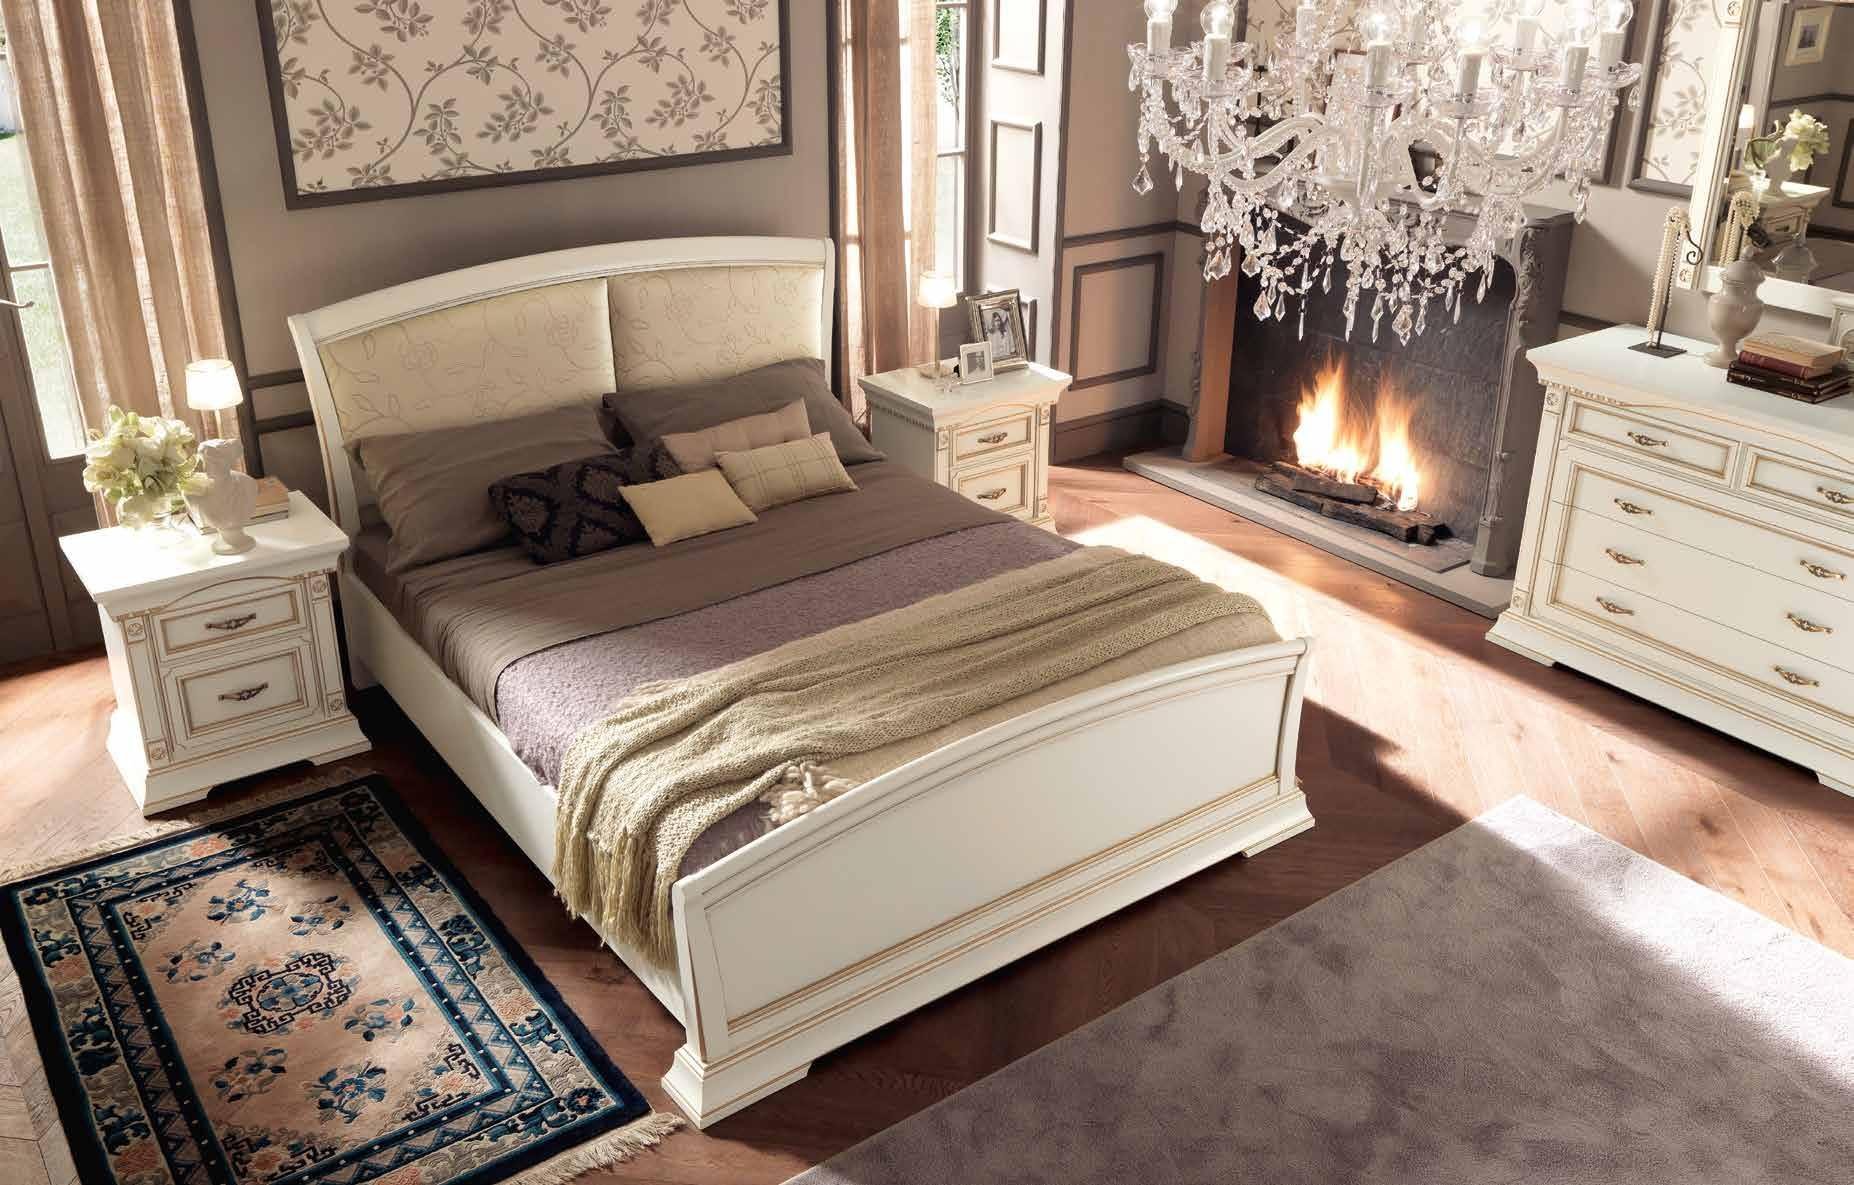 Кровать Prama Palazzo Ducale laccato, двуспальная, с мягким изголовьем и изножьем, цвет: белый с золотом, экокожа, 160x200 см (71BO14LT)71BO14LT